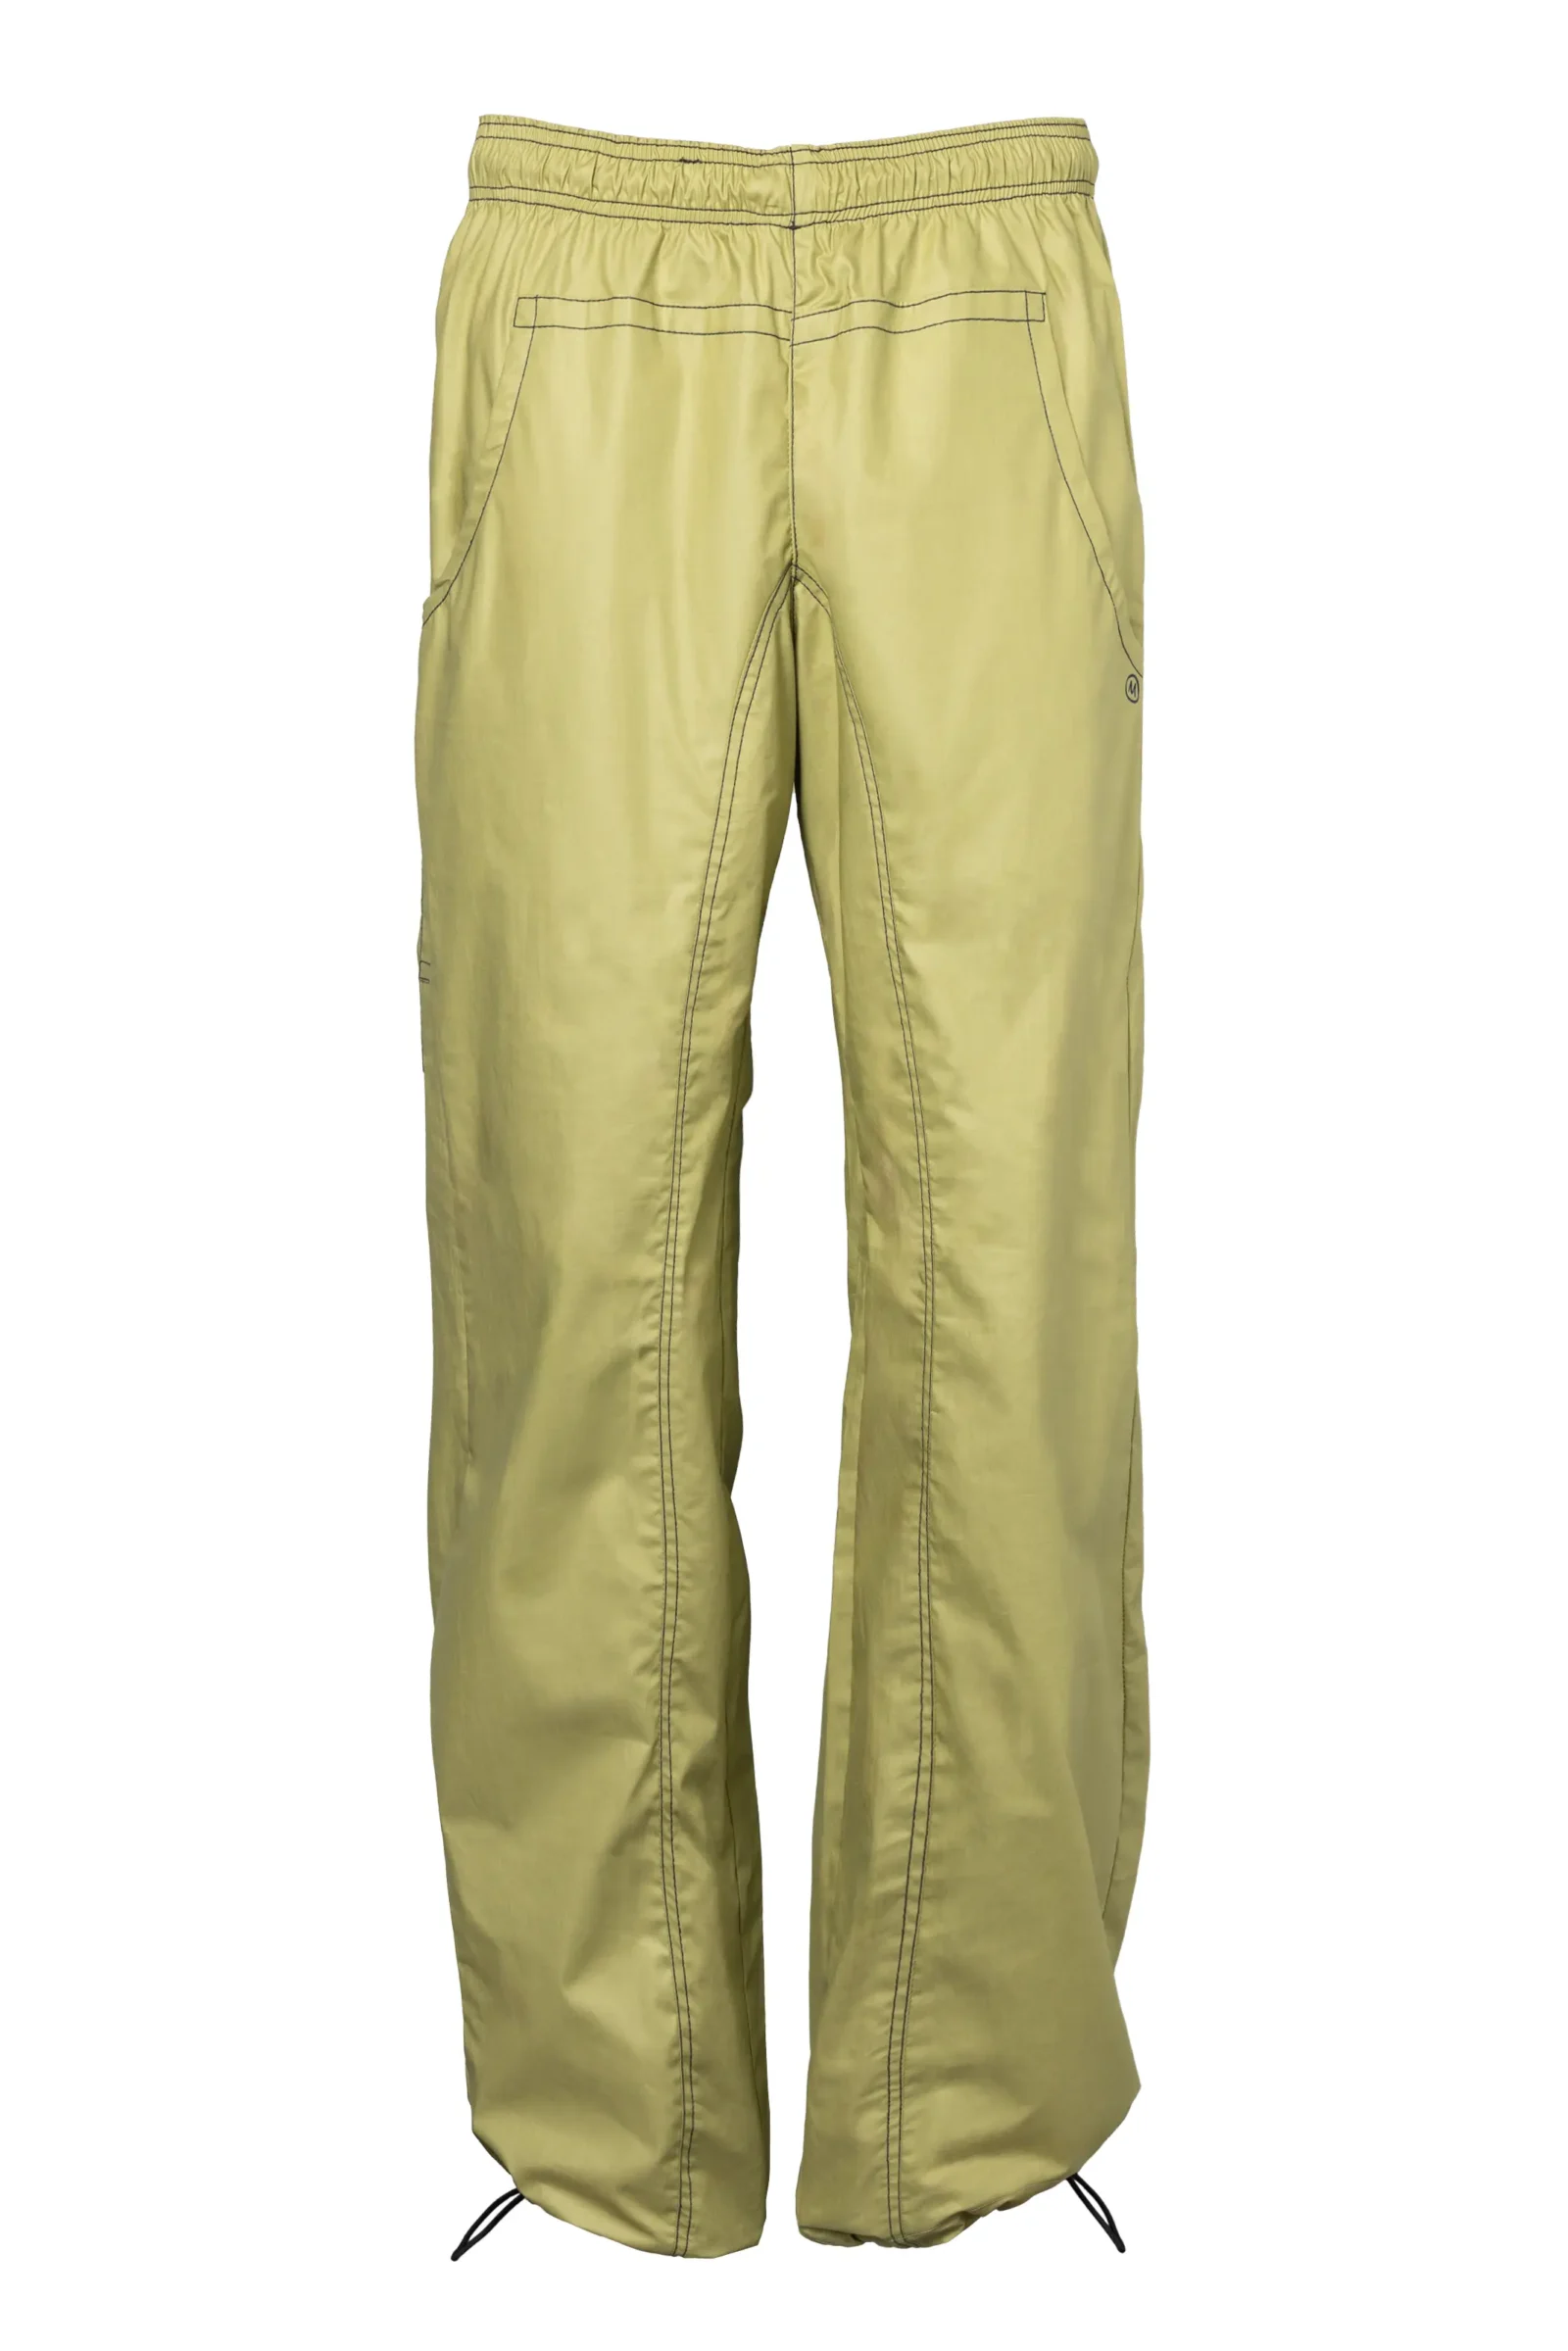 Men's waterproof trousers - sage green - JIMMY MONVIC